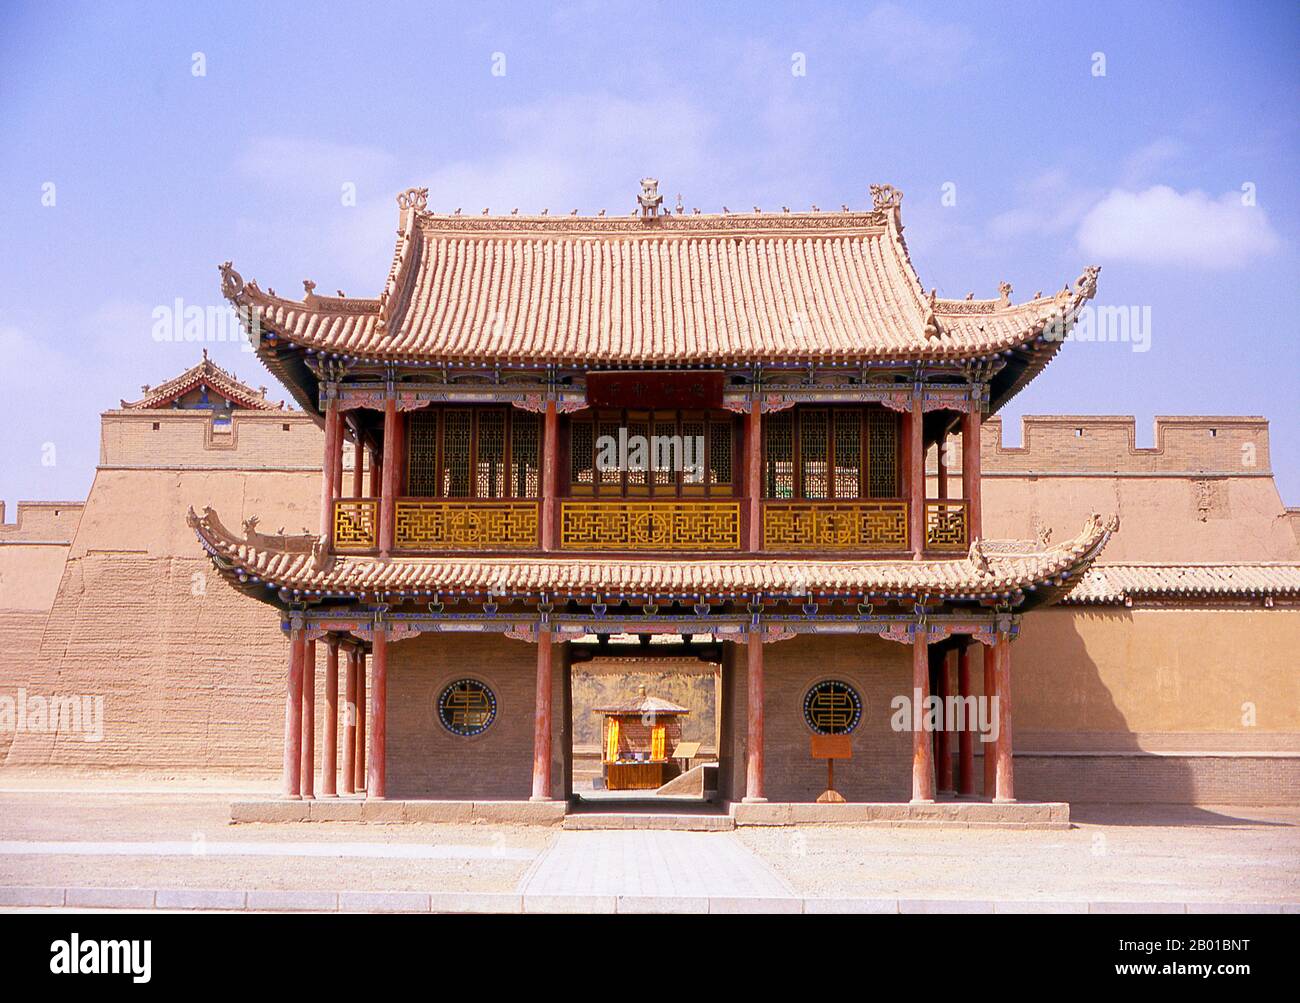 Cina: Wenchang Hall, Jiayuguan Fort, Jiayuguan, Gansu. Jiayuguan, il “primo e più grande passo sotto il cielo”, fu completato nel 1372 su ordine di Zhu Yuanzhang, il primo imperatore Ming (1368-98), per segnare la fine della Grande Muraglia Ming. Era anche il limite stesso della civiltà cinese, e gli inizi delle terre “barbariche” esterne. Per secoli il forte non era solo di importanza strategica per i cinesi Han, ma anche di significato culturale. Questo era l'ultimo luogo civilizzato prima delle tenebre esterne, e quelli che procedono oltre affrontarono una vita di esilio tra stranieri nomadi. Foto Stock